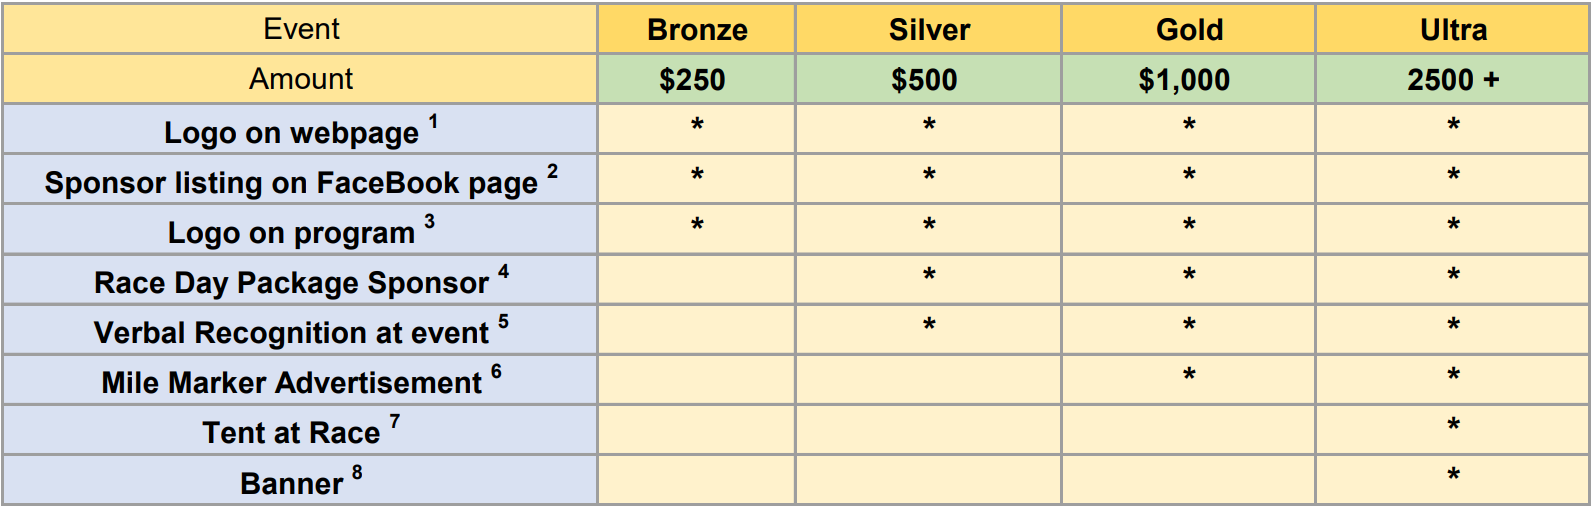 sponsorship levels table